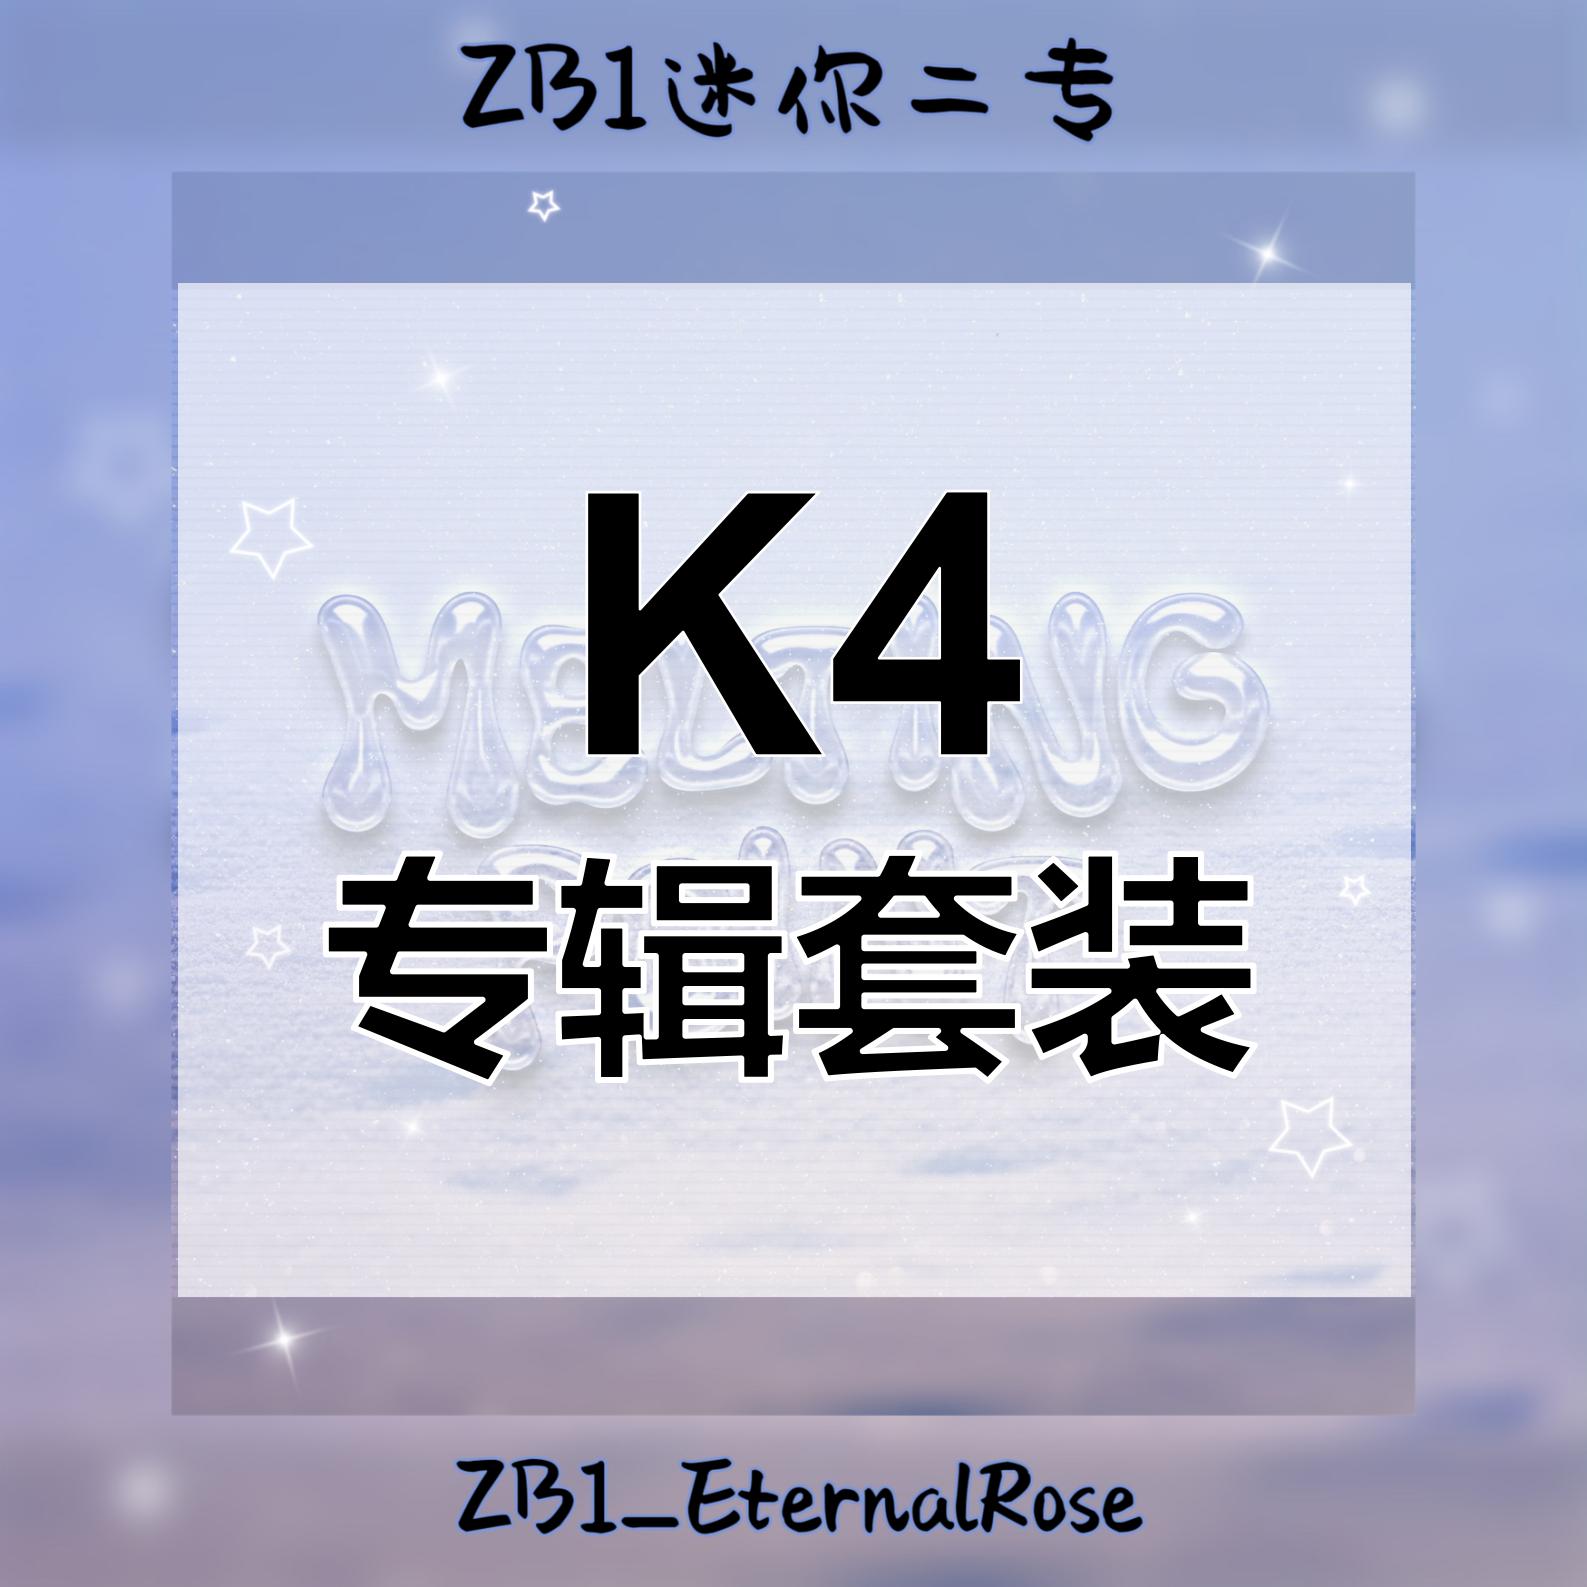 [全款 裸专] [Ktown4u Special Gift] [3CD SET] ZEROBASEONE - The 2nd Mini Album [MELTING POINT] (Fairytale ver. + Mystery ver. + Loyalty ver.)_ZB1_EternalRose